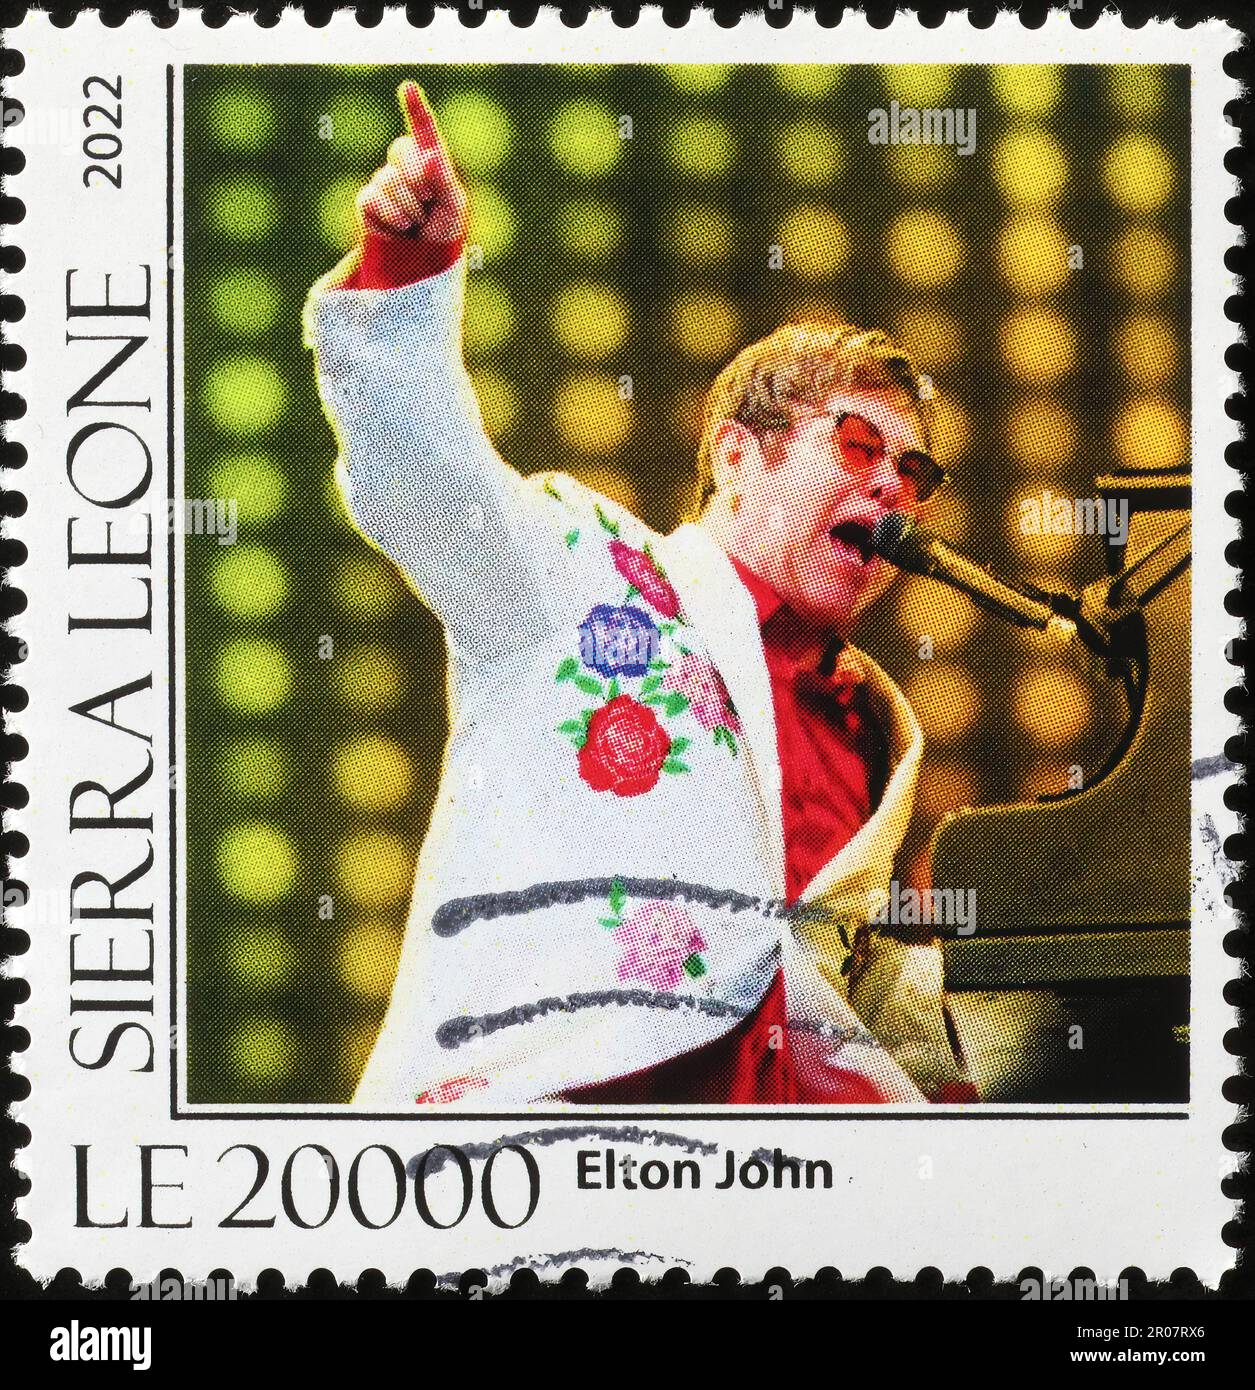 Elton John in concerto sul francobollo Foto Stock